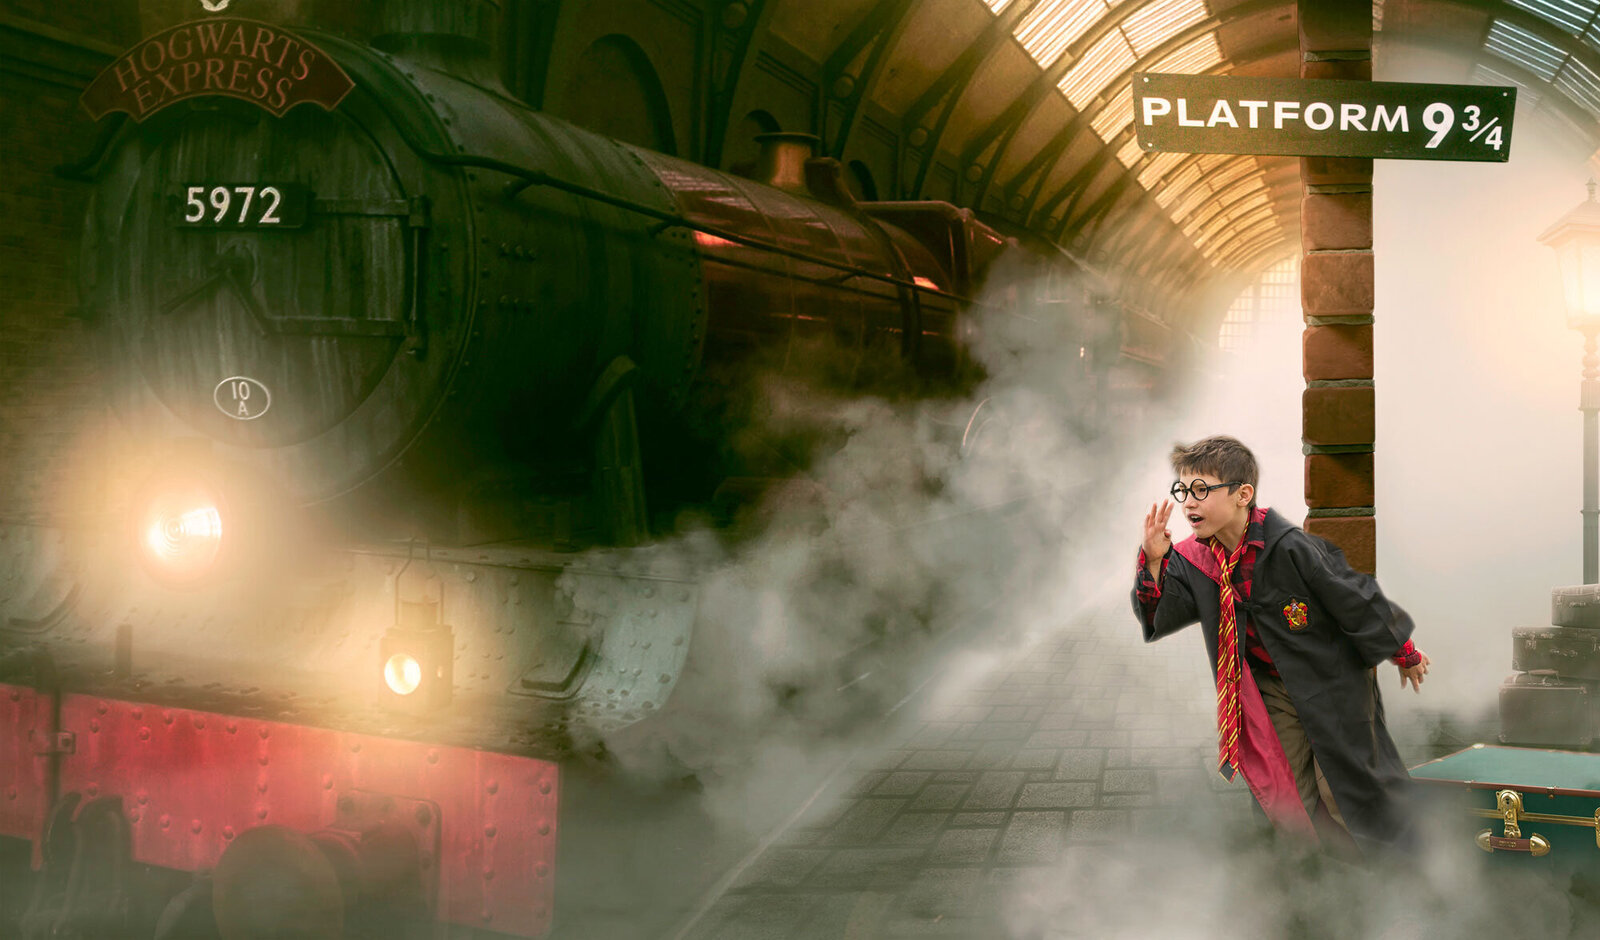 harry-potter-train-station-9-3-platform-hogsmeade-hogswarts-smoke-vintage